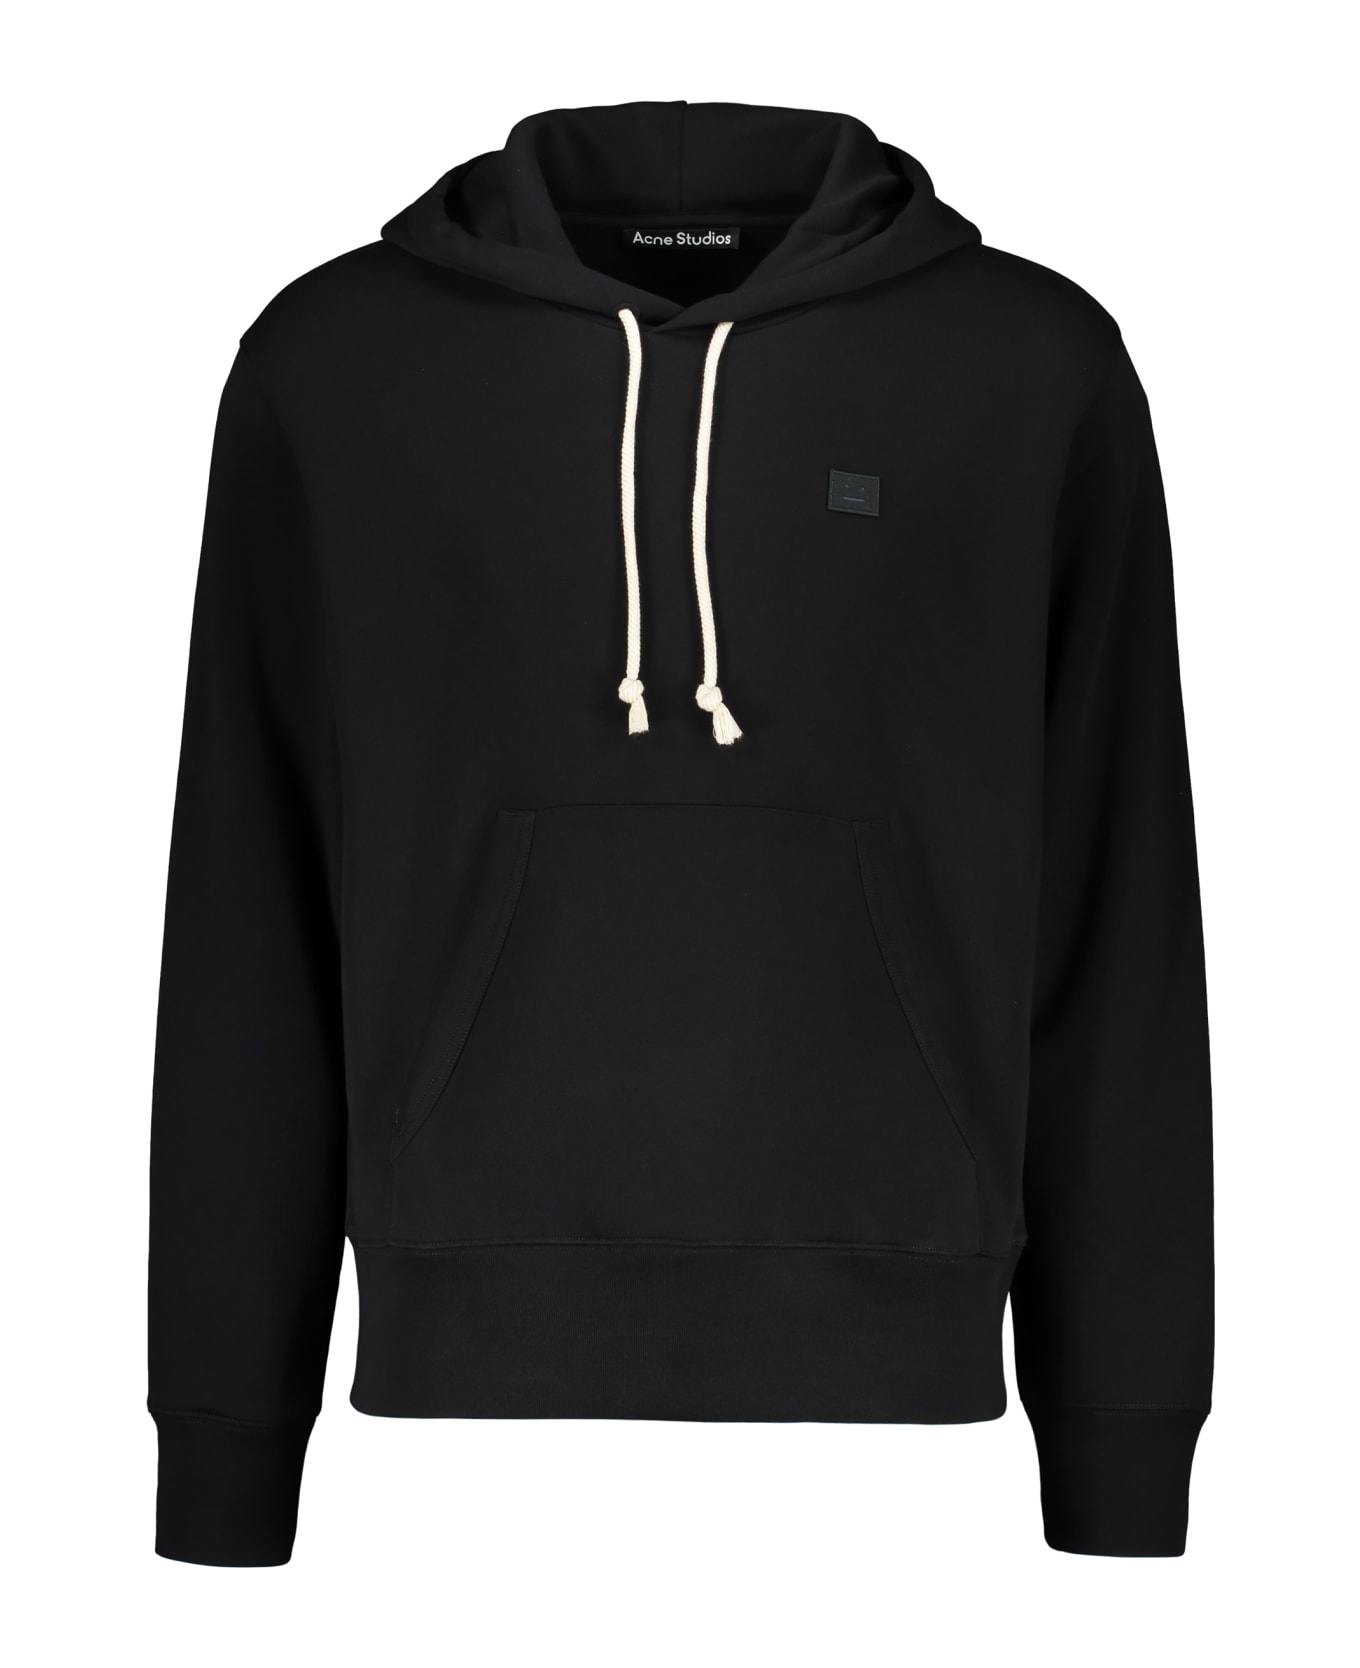 Acne Studios Hooded Sweatshirt - black